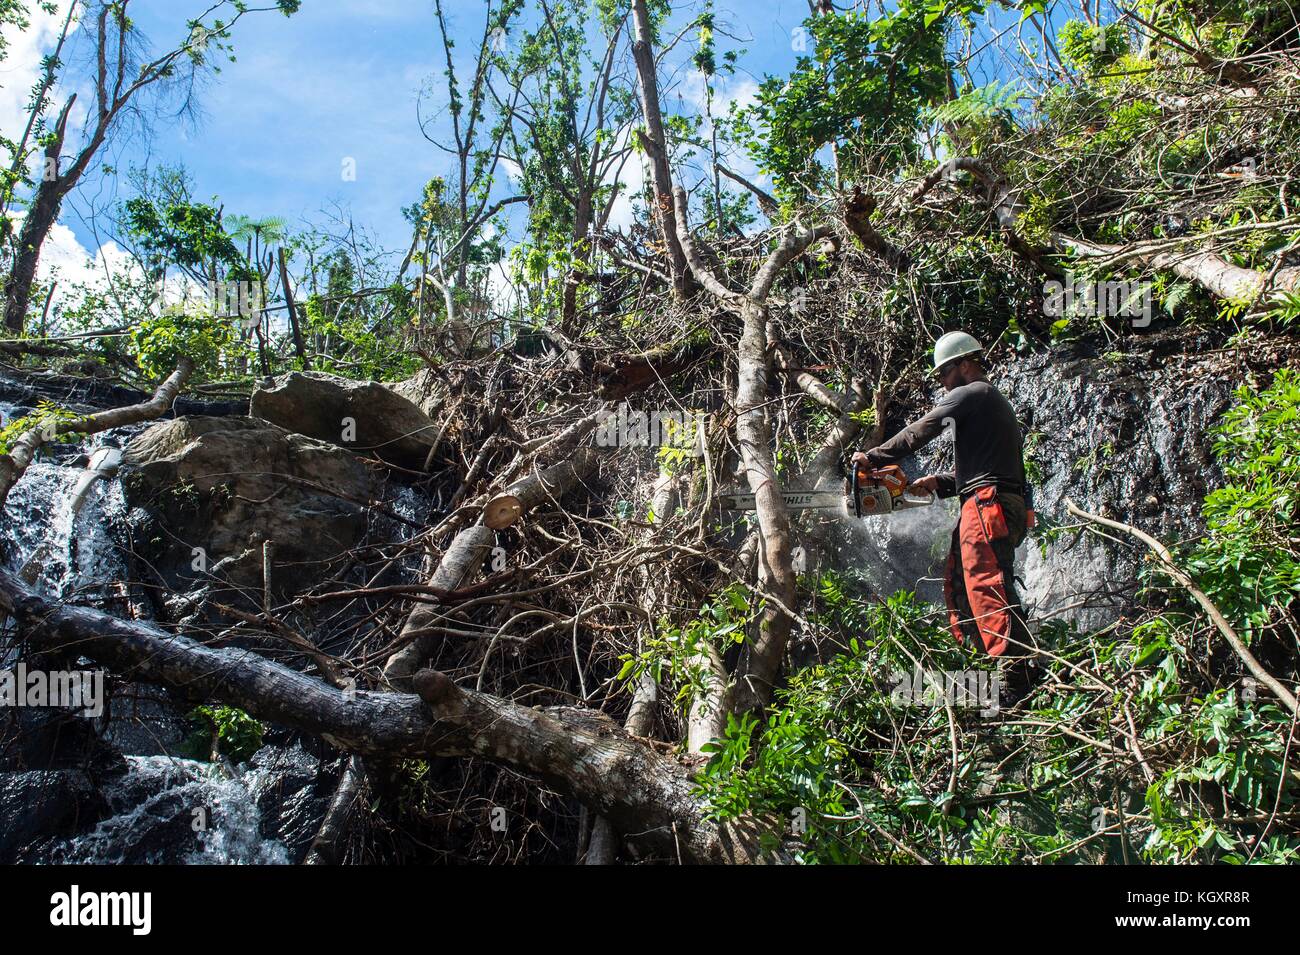 Ted piehl, una foresta di Stati Uniti service smokejumper tagli alberi abbattuti durante le operazioni di cancellazione di El Yunque National Forest Novembre 6, 2017 in puerto rico. uragano maria devastato la foresta pluviale tropicale. ((Foto di Nicola dutton via planetpix) Foto Stock